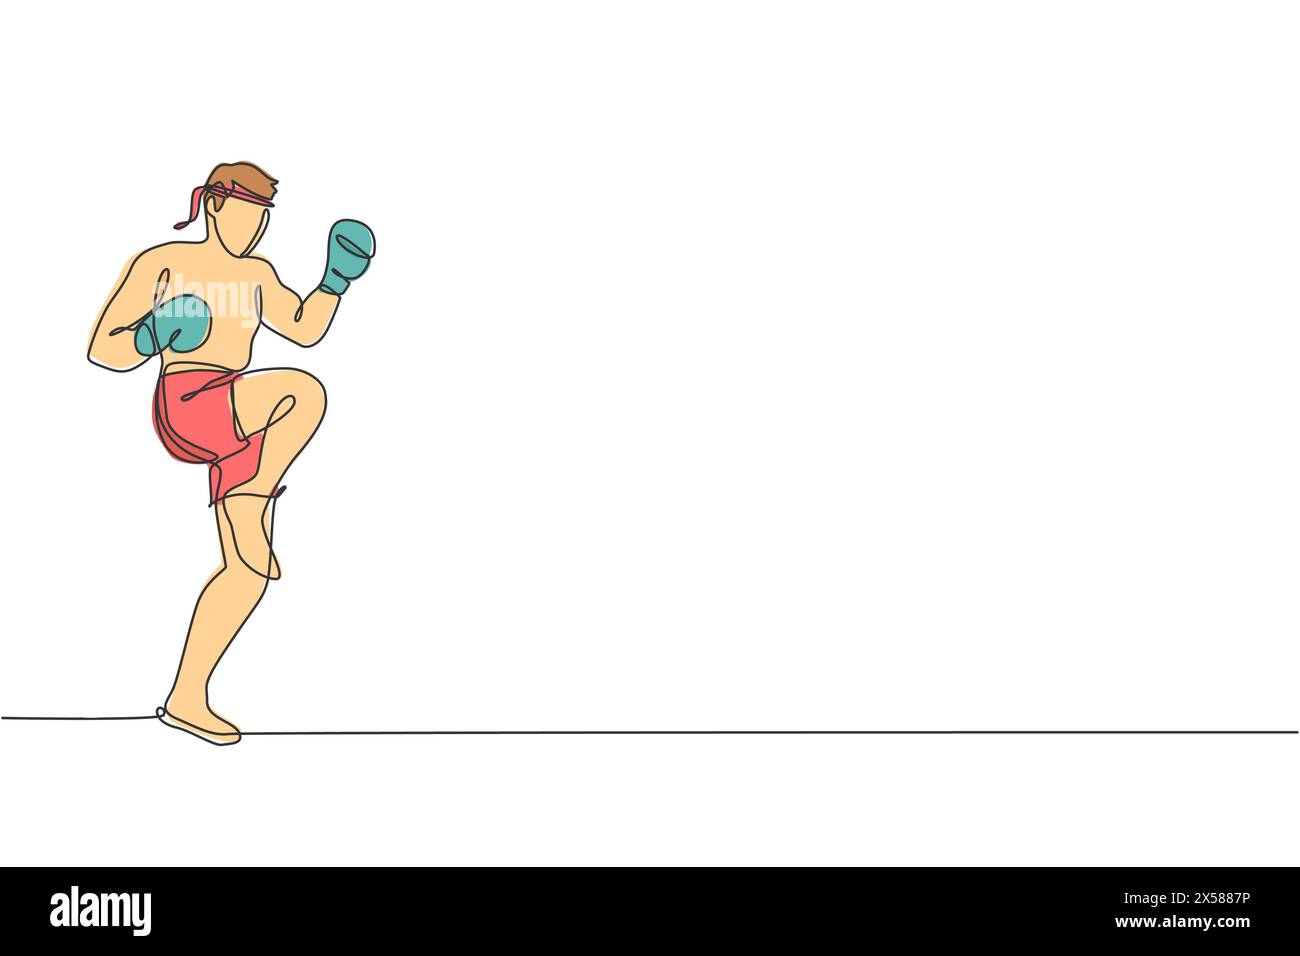 Un dessin simple ligne de jeune homme de combat énergique muay thai exerçant un coup de pied au centre de fitness de gymnastique illustration vectorielle. Boxe thaïlandaise combative spor Illustration de Vecteur